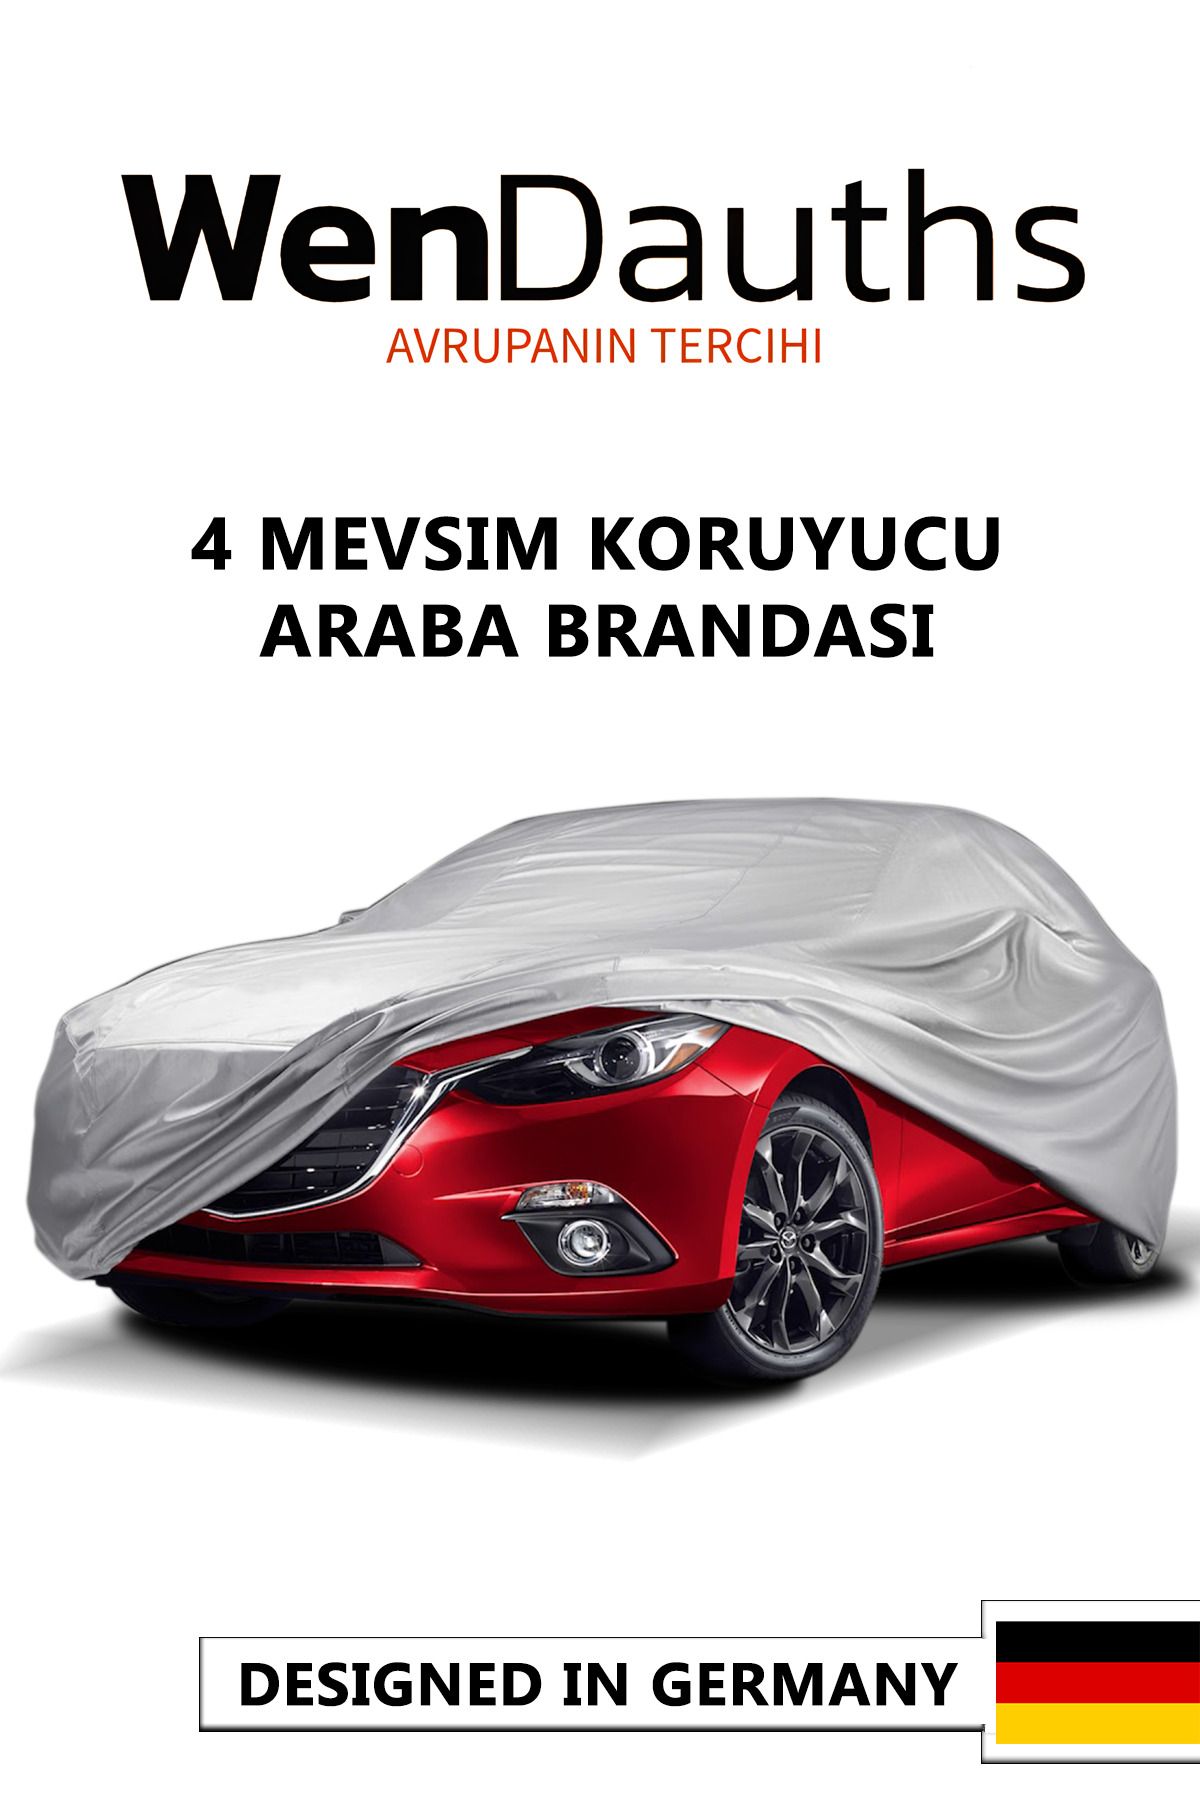 Wen Dauths Mınemobility Sport Ev Concept 45 Kwh (163 Hp) 2019 Araba Brandası, Oto Örtü, Kılıf